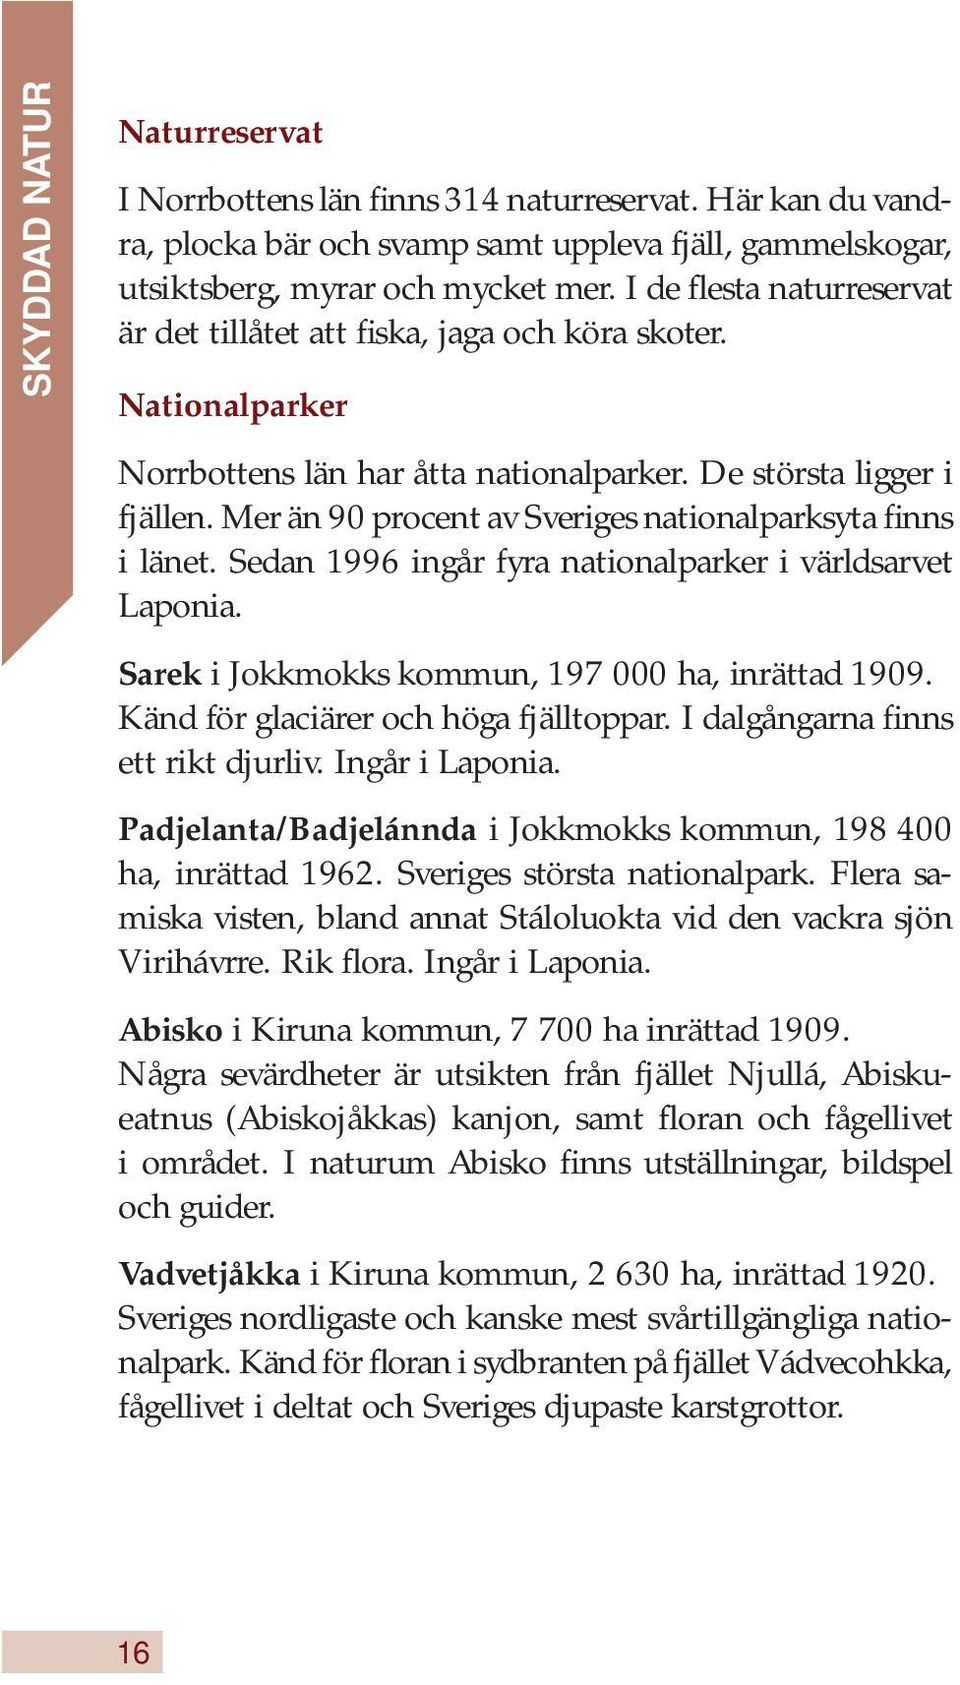 Mer än 90 procent av Sveriges nationalparksyta finns i länet. Sedan 1996 ingår fyra nationalparker i världsarvet Laponia. Sarek i Jokkmokks kommun, 197 000 ha, inrättad 1909.